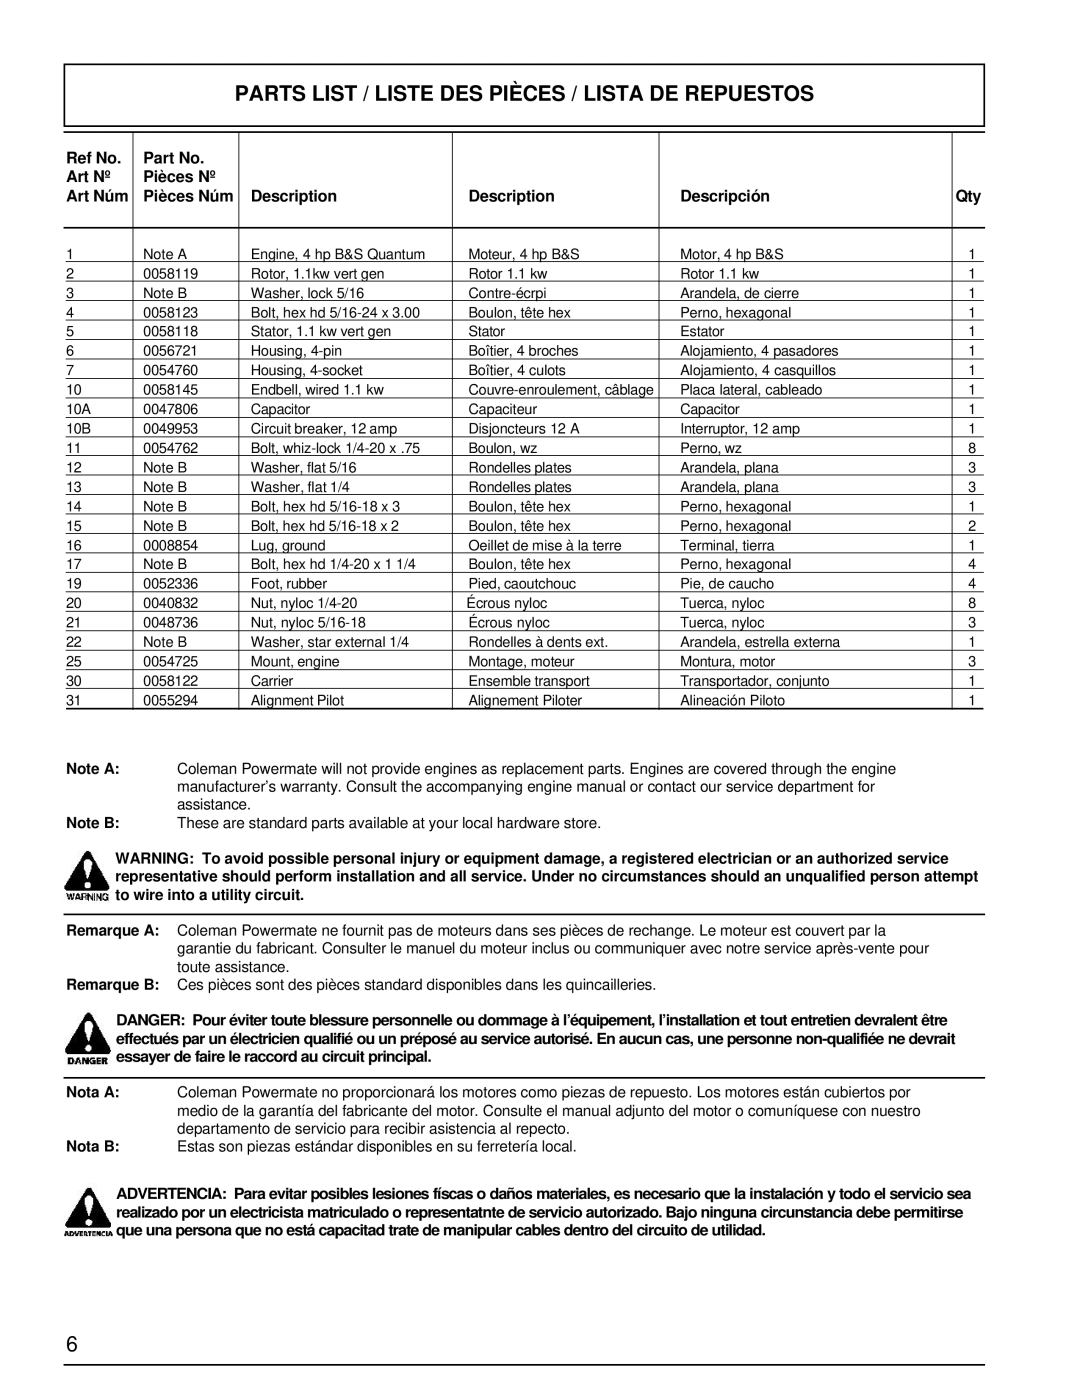 Powermate PM0421100 manual Ref No, Art Nº, Pièces Nº, Art Núm, Pièces Núm, Description, Descripción 